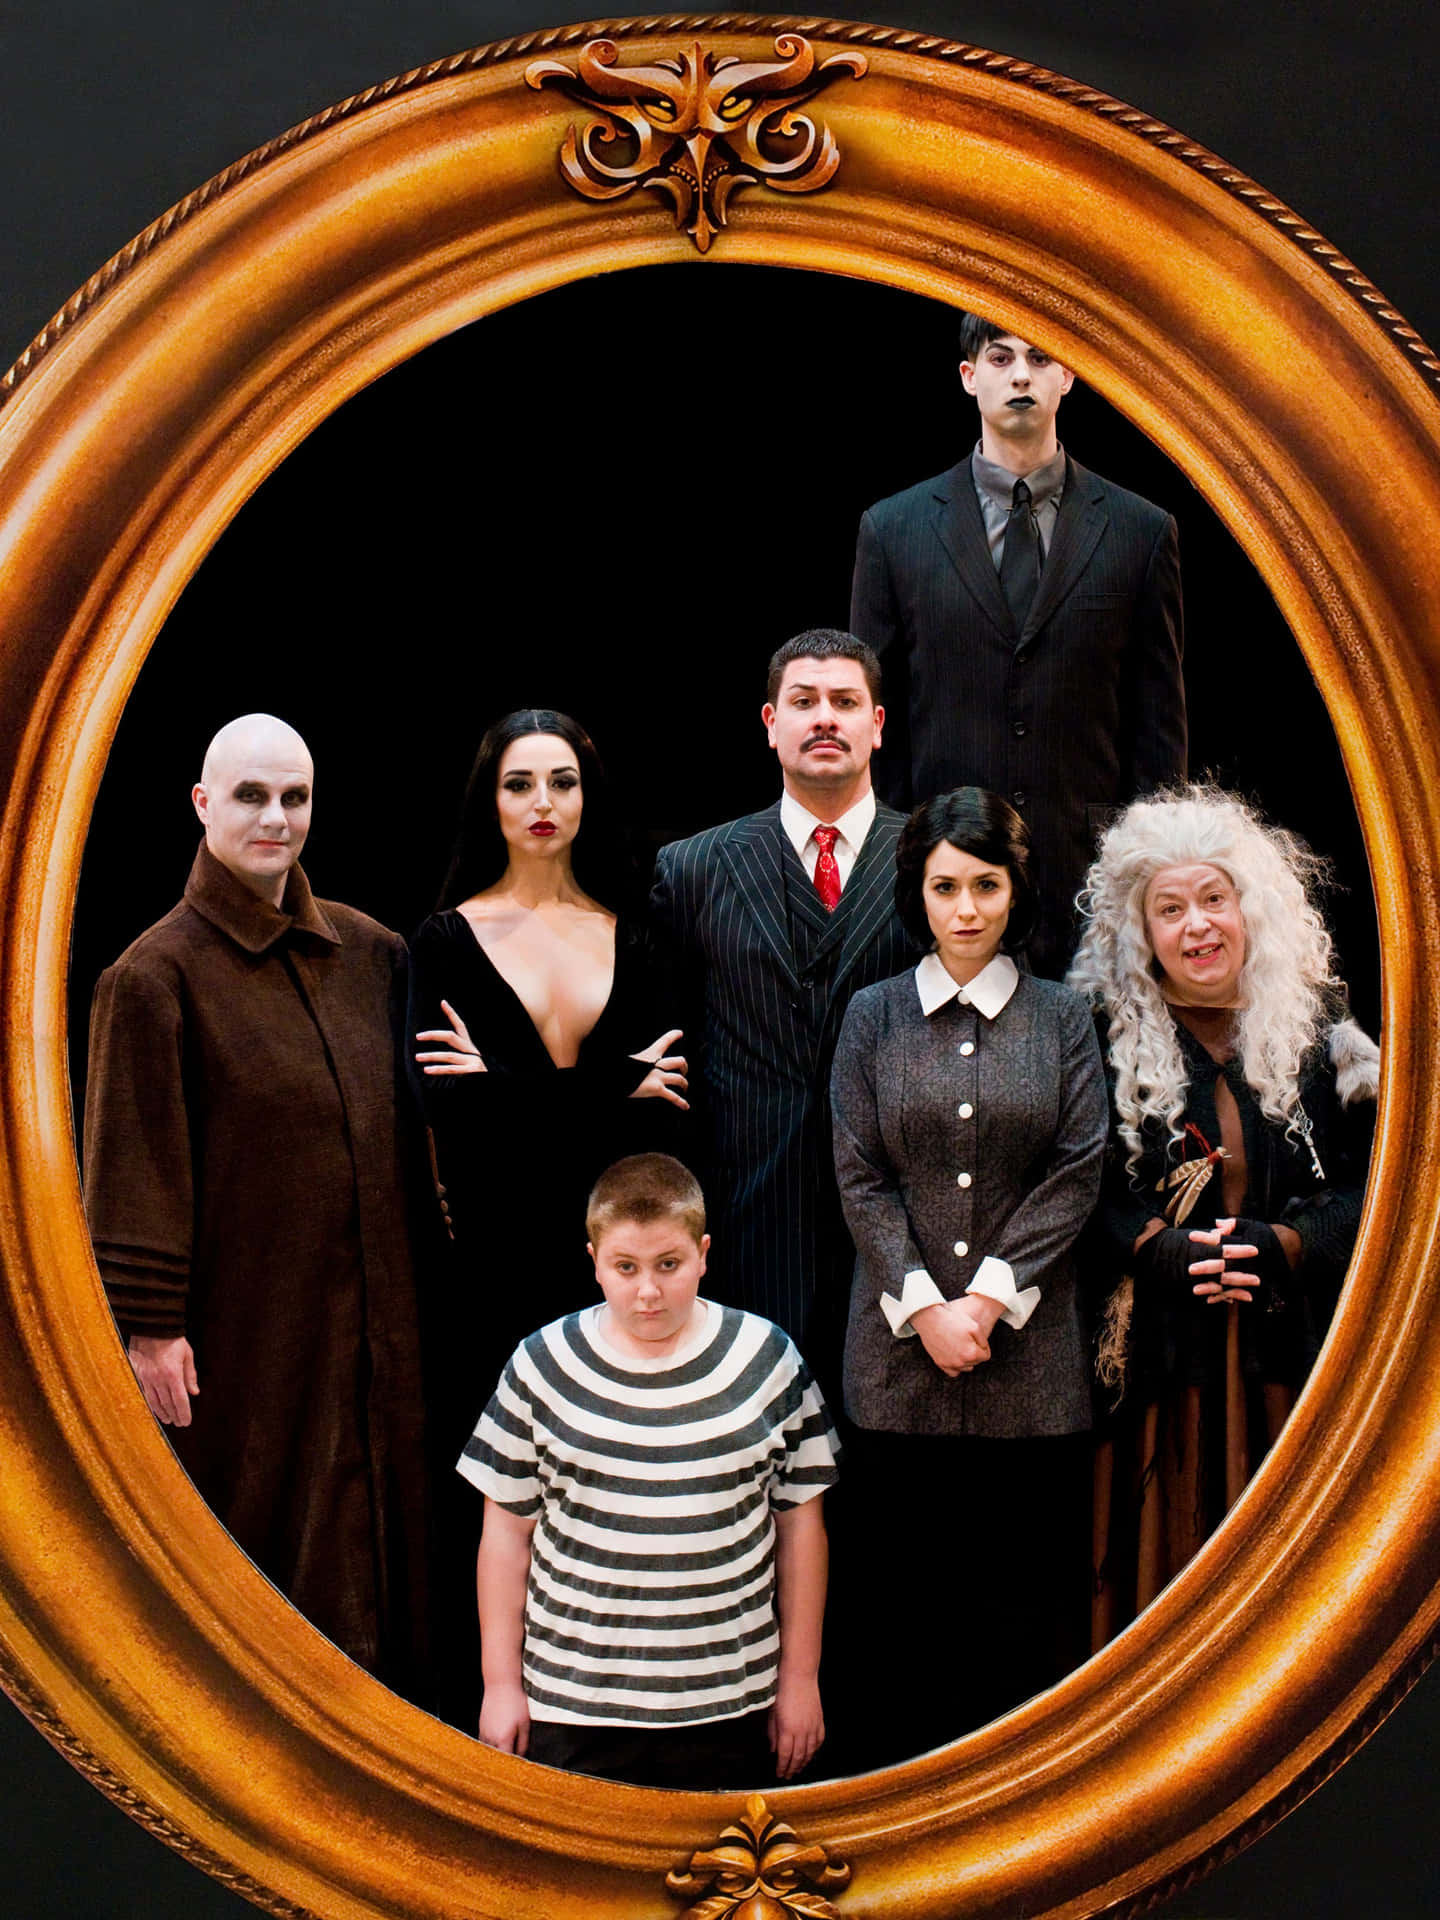 Lafamilia Addams Viviendo La Vida Espeluznante.